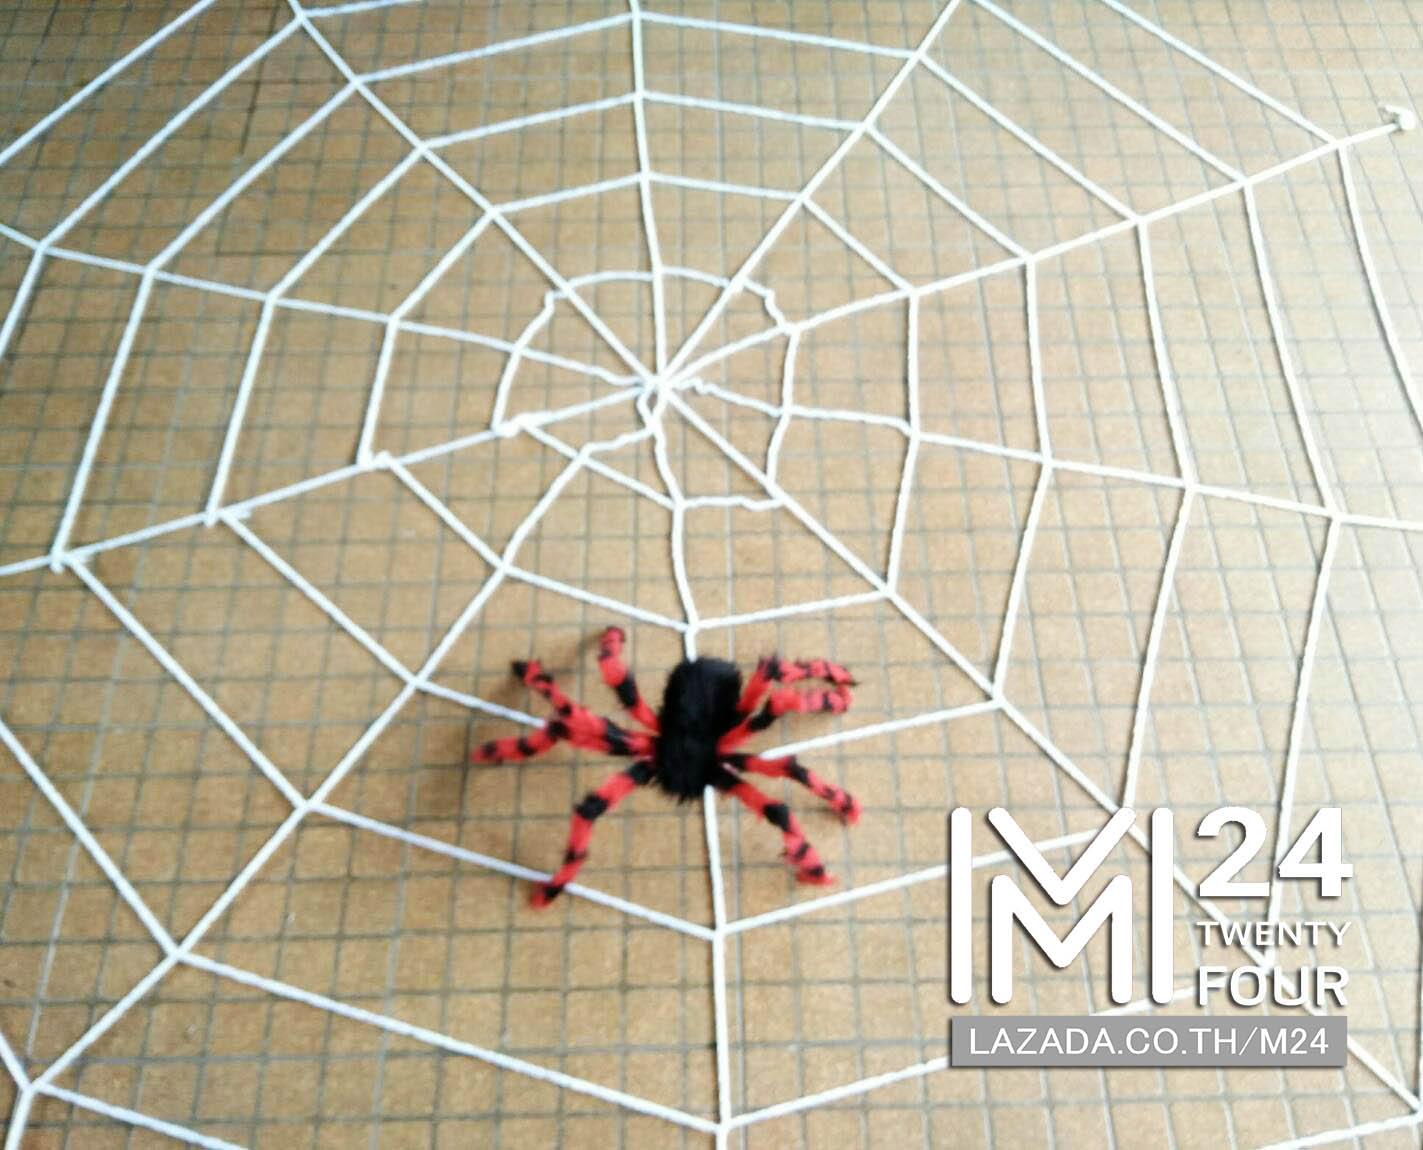 1 เซ็ต 2 ชิ้น ขนาด 3x3 เมตร ใยแมงมุมยักษ์ สีขาว 1 ชิ้น + แมงมุมยักษ์ สีแดงดำ 1 ตัว แมงมุมปลอม แมงมุม ยักษ์ ตัวใหญ่ ของปลอม ของเล่น ตัวตลก ของเล่นแกล้งคน อุปกรณ์ตกแต่ง ฮาโลวีน black widow giant spider web party happy halloween